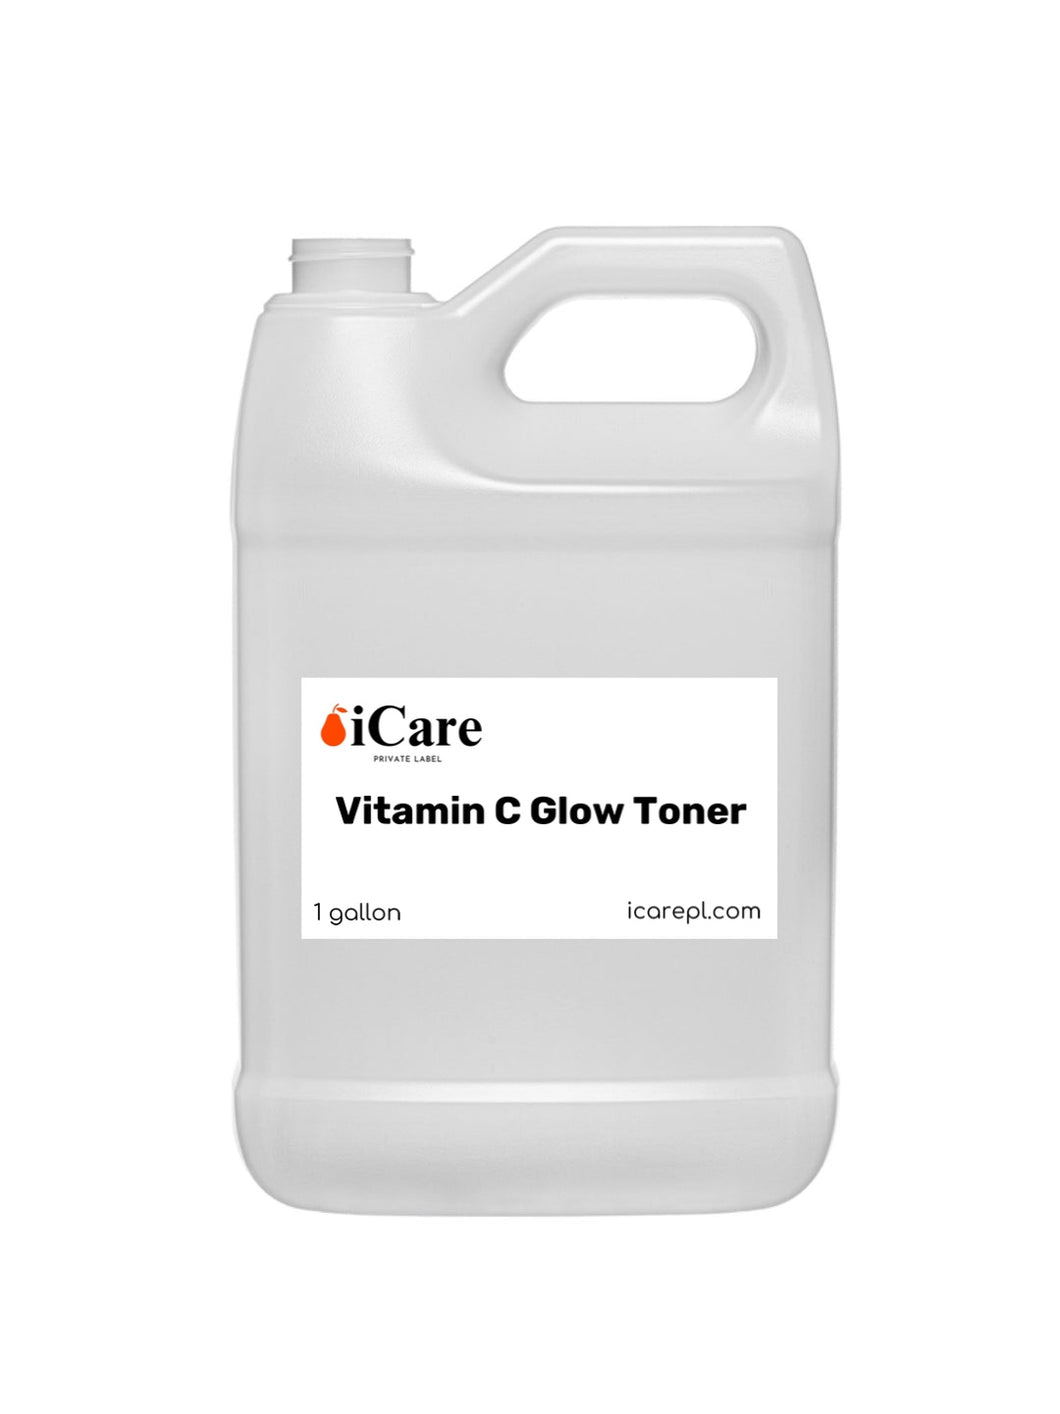 XZU - Vitamin C Glow Toner Gallon